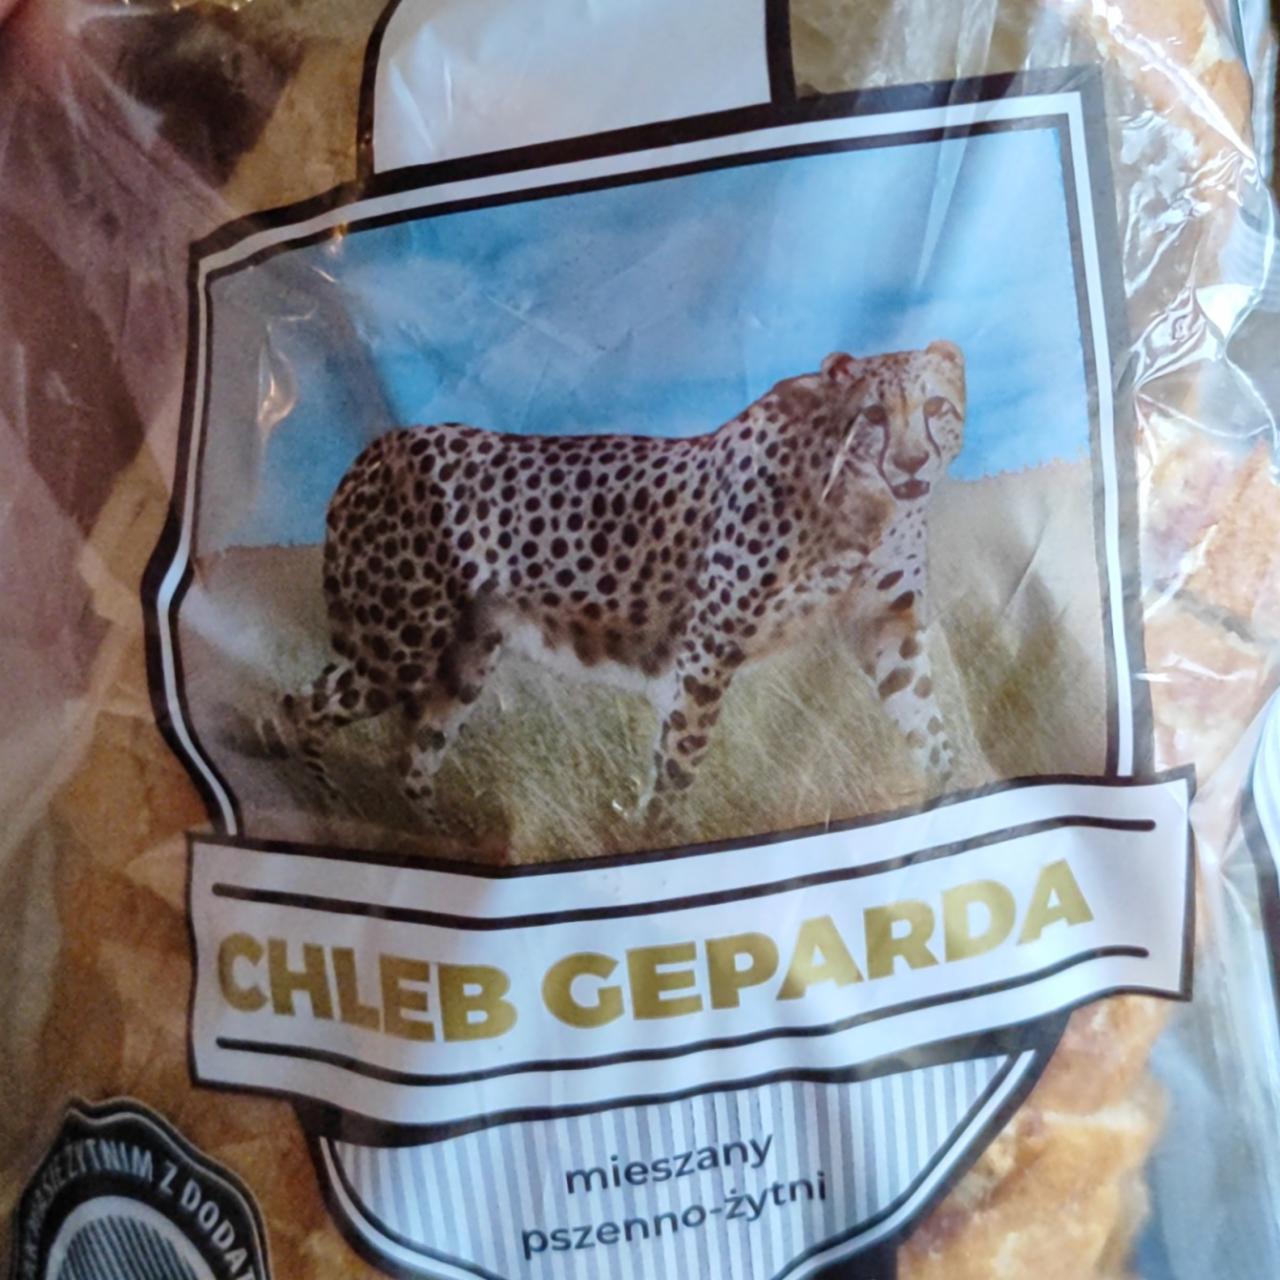 Zdjęcia - Chleb geparda pszenno-żytni Biedronka